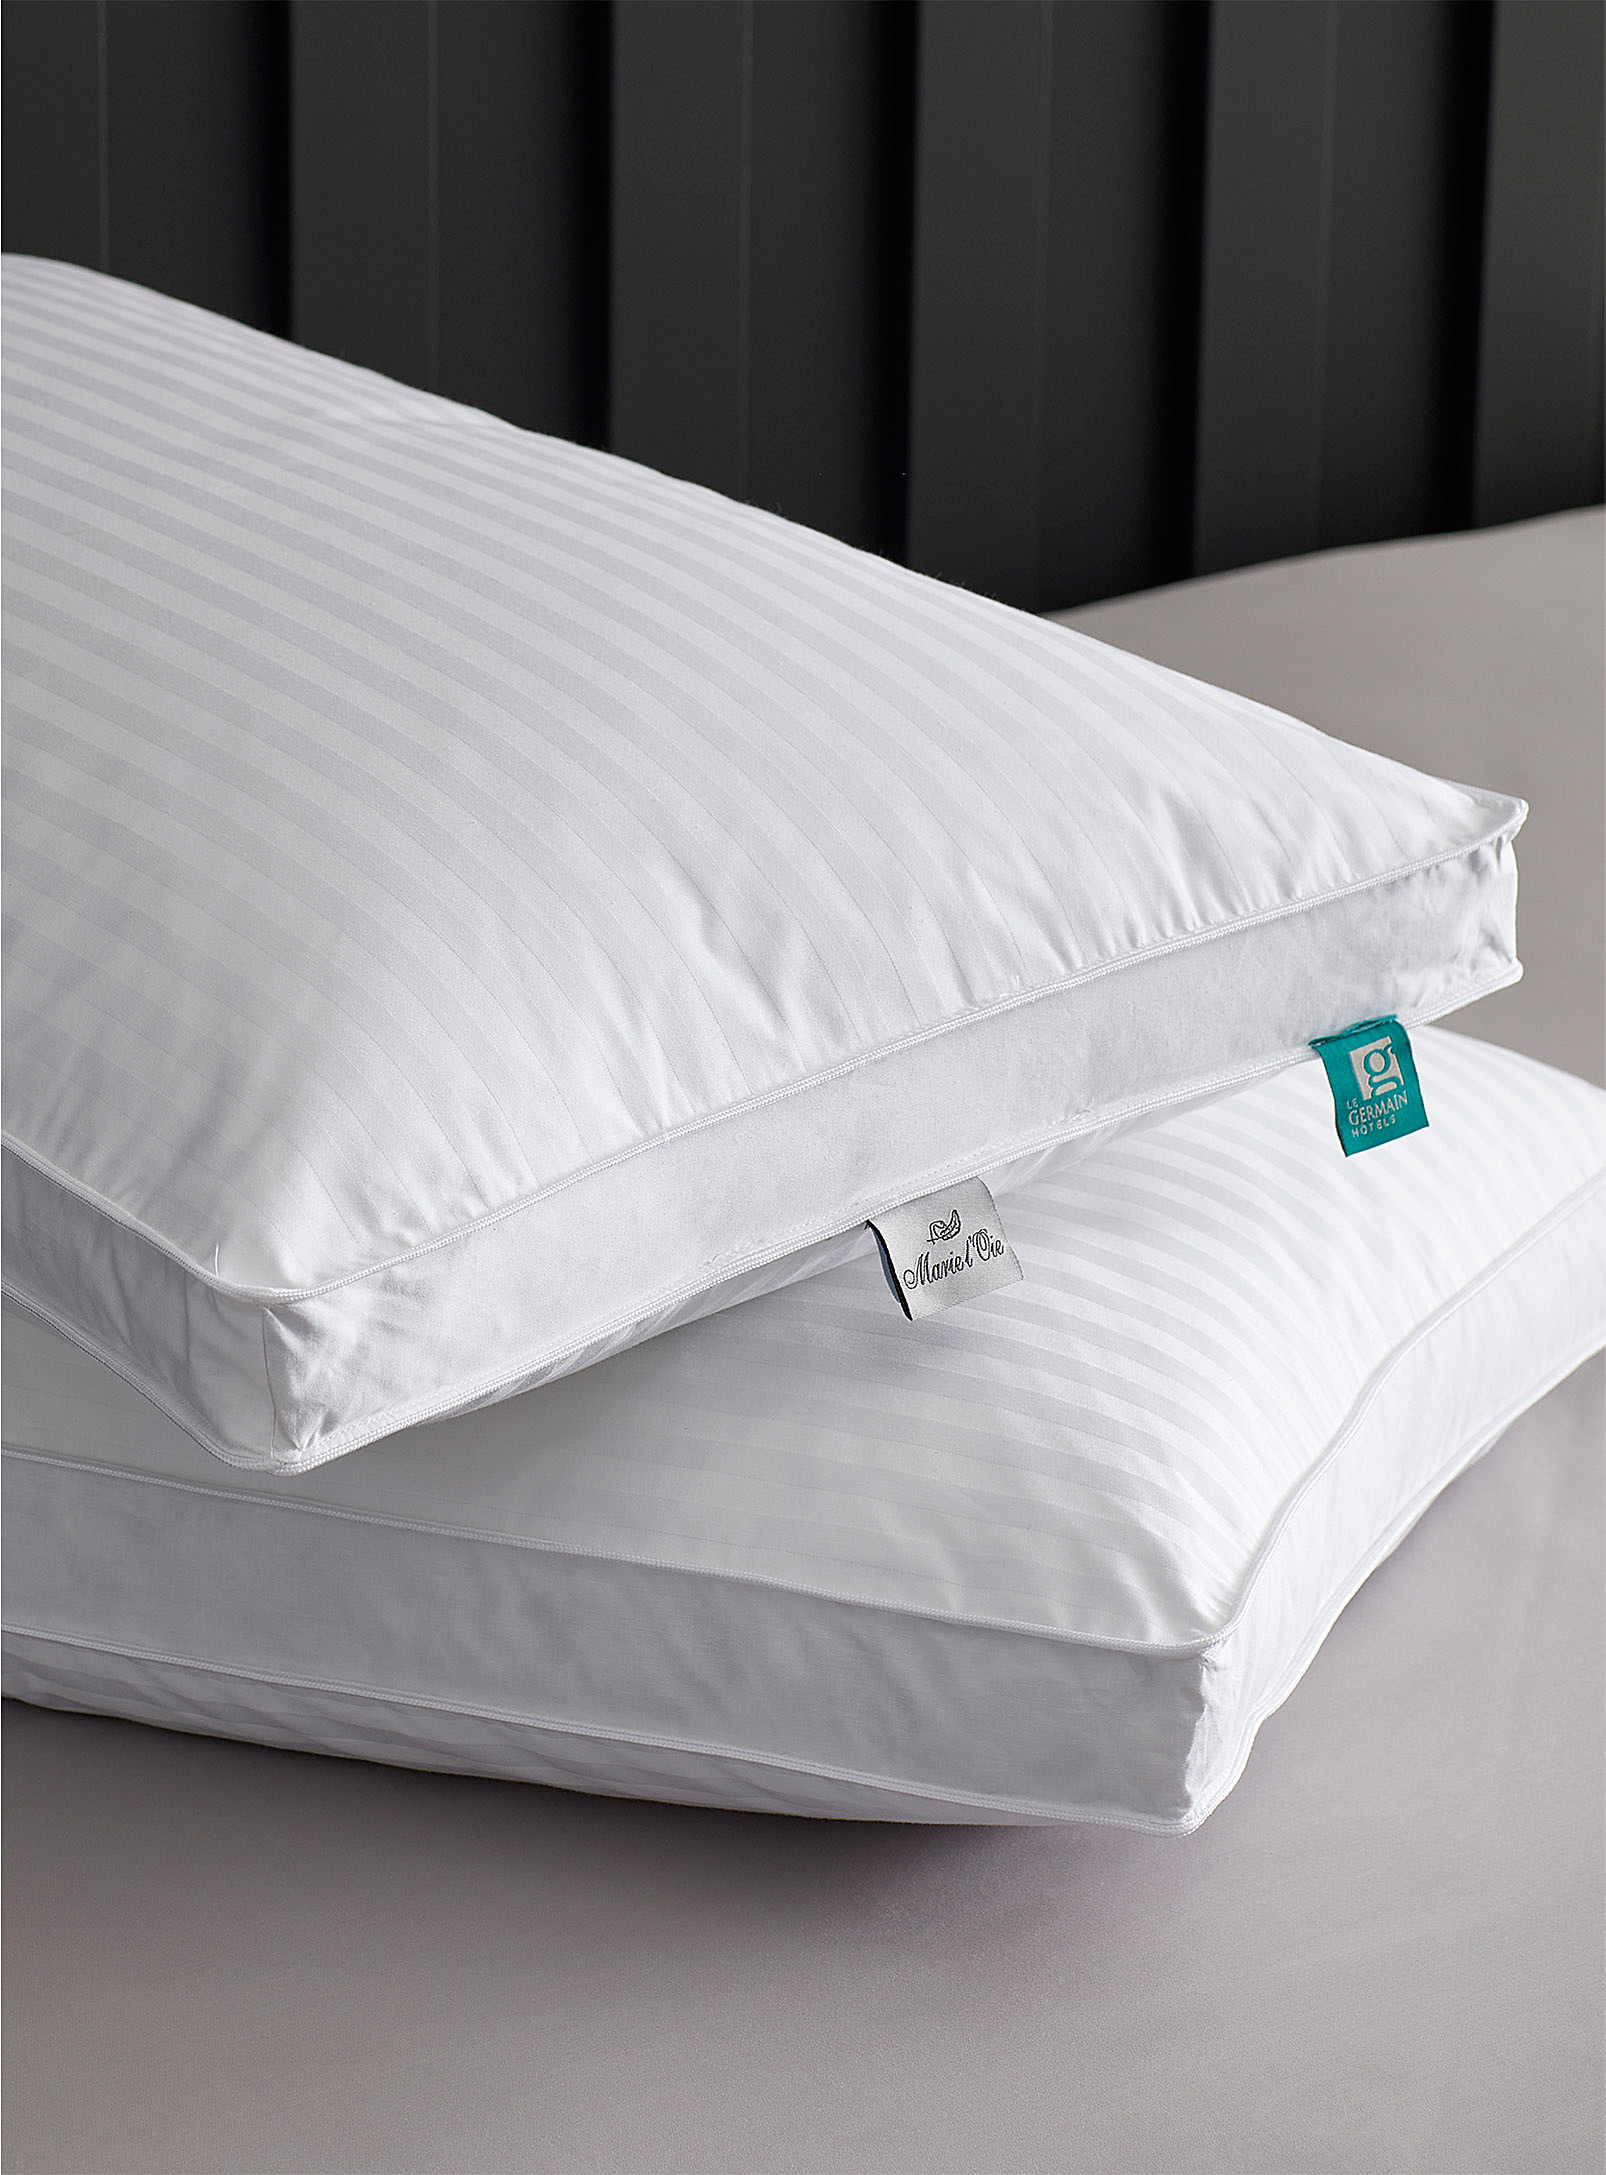 Hôtels Le Germain - Divine pillow Soft support